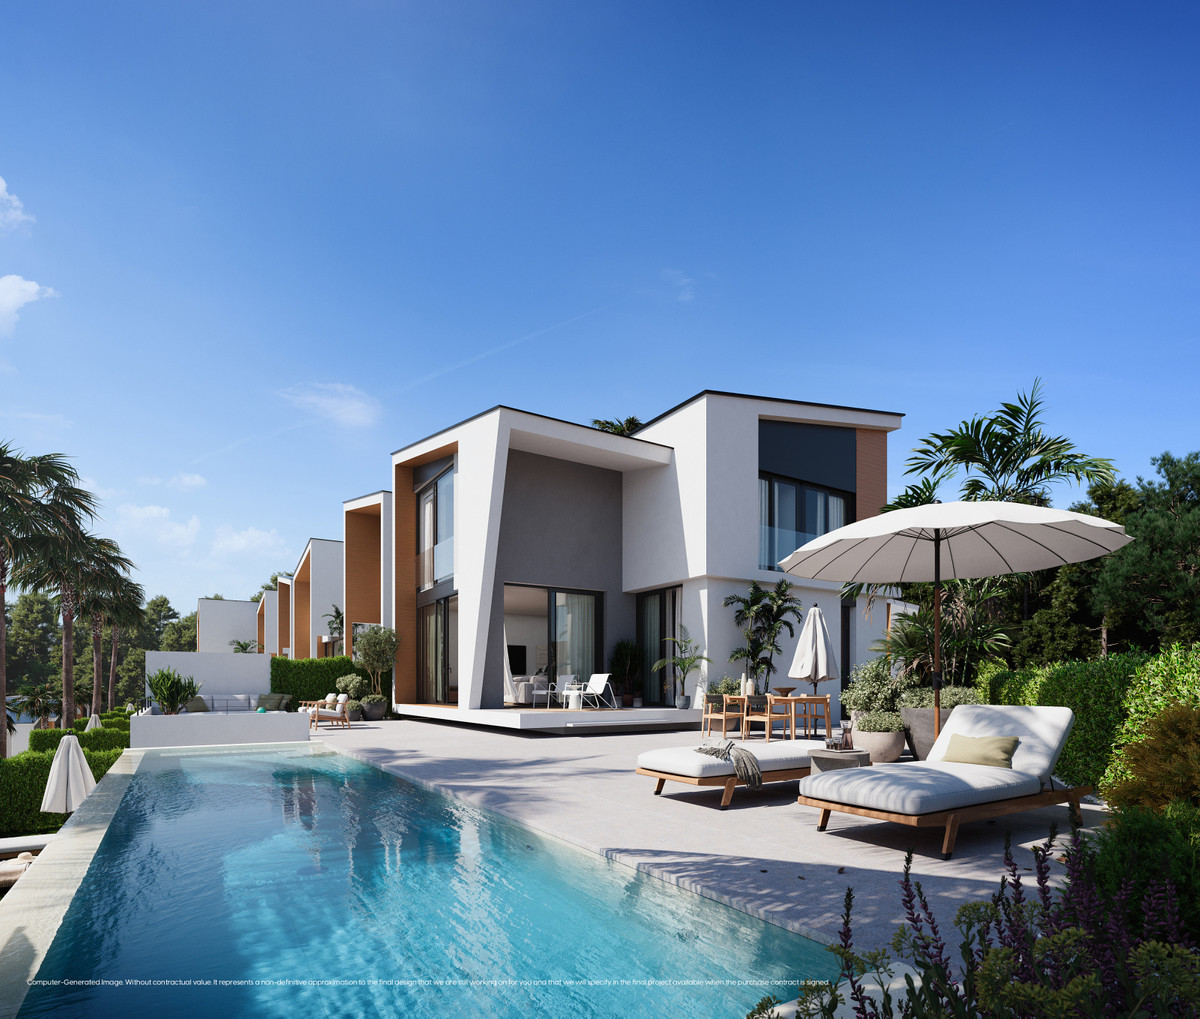  Detached Villa for sale in El Chaparral, Costa del Sol